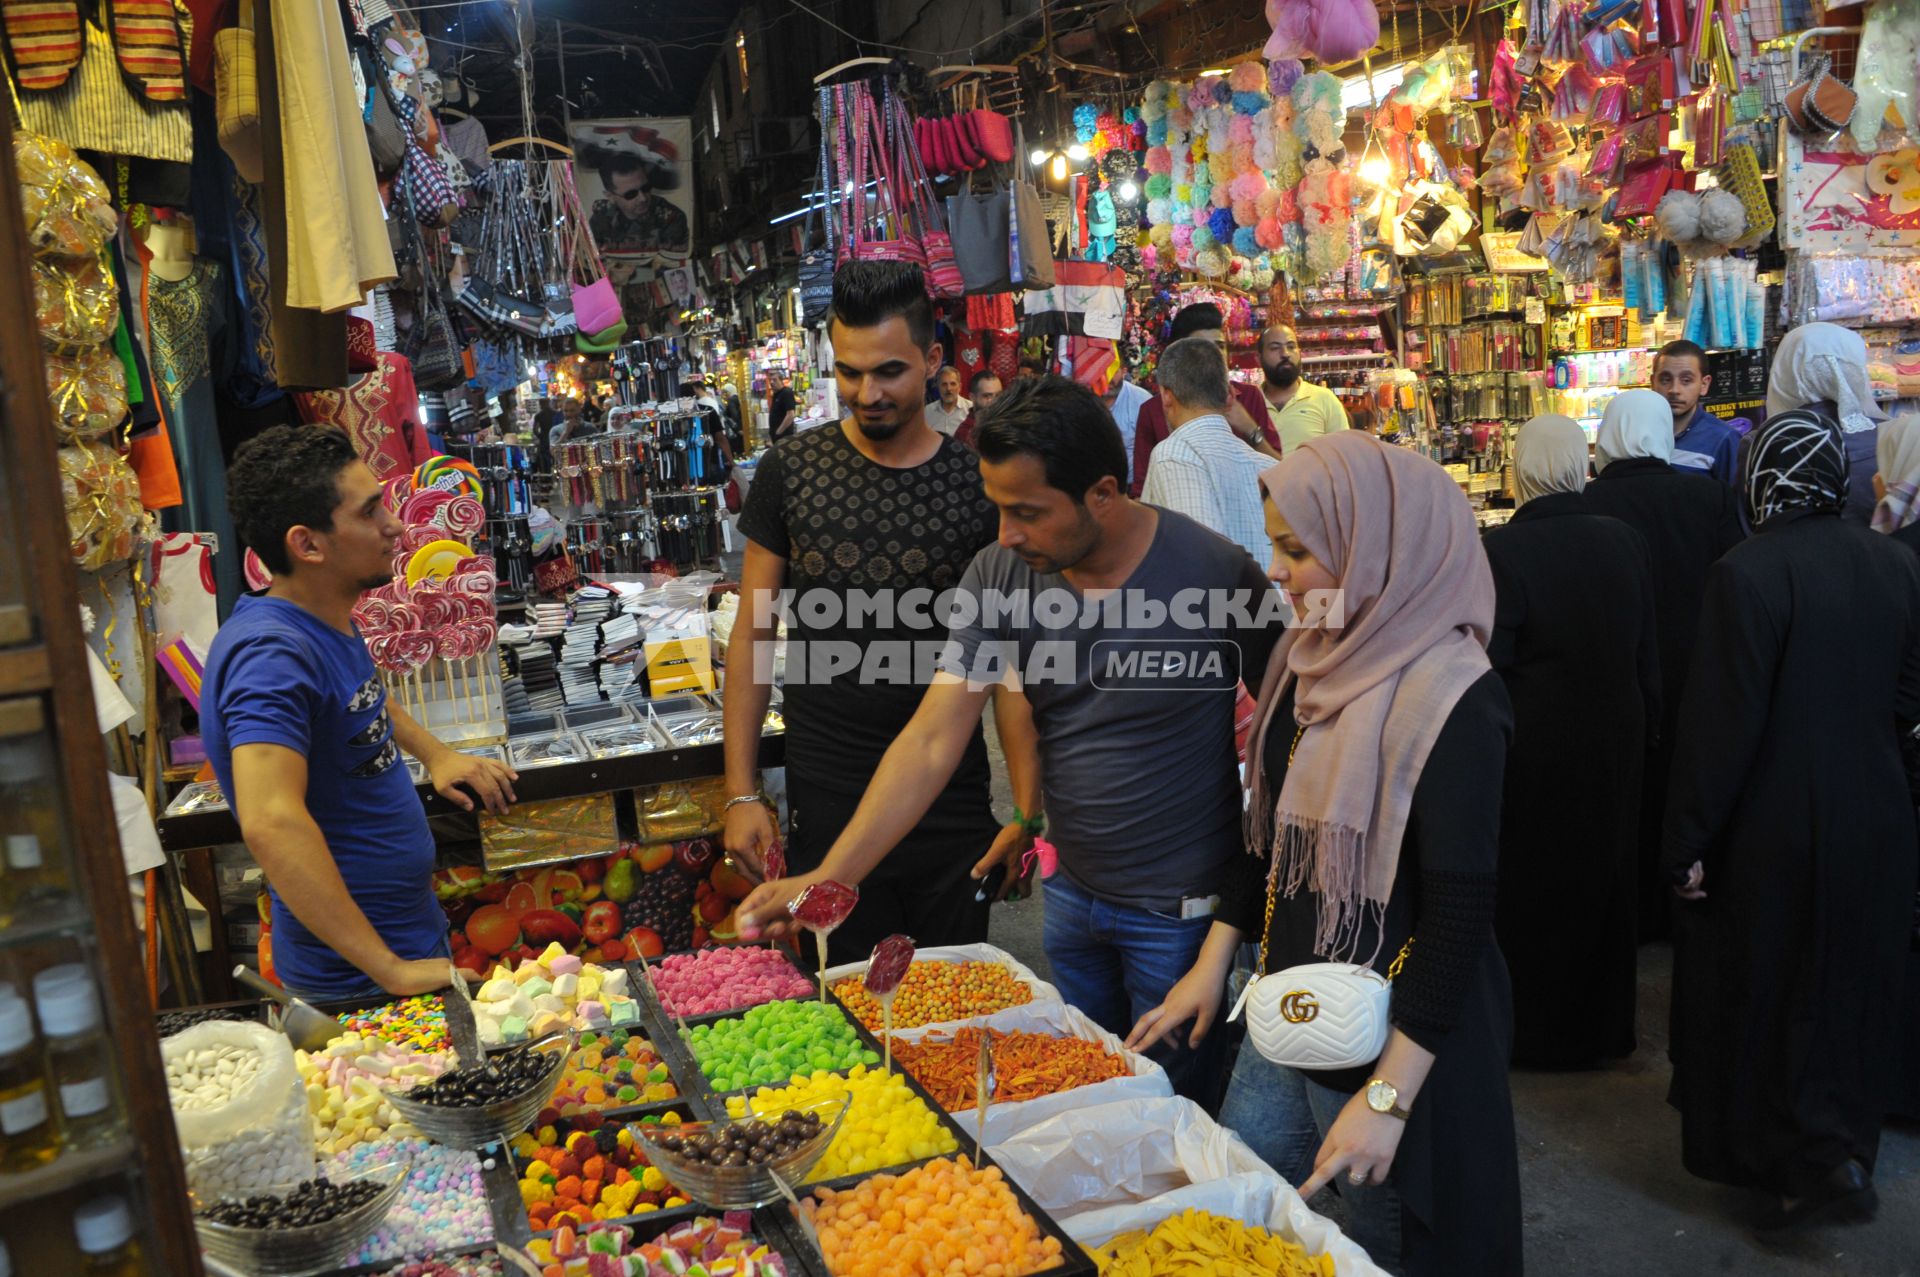 Сирия, Дамаск. На городском рынке.